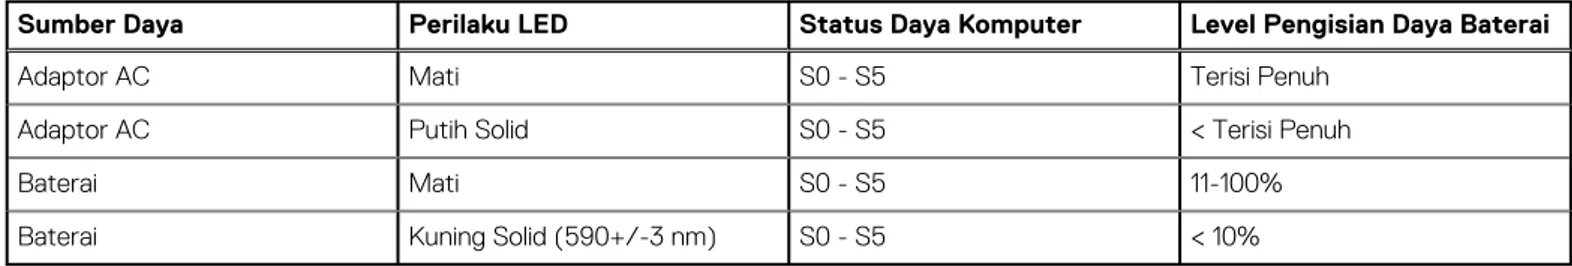 Tabel 2. Pengisian daya baterai dan Indikator LED status 